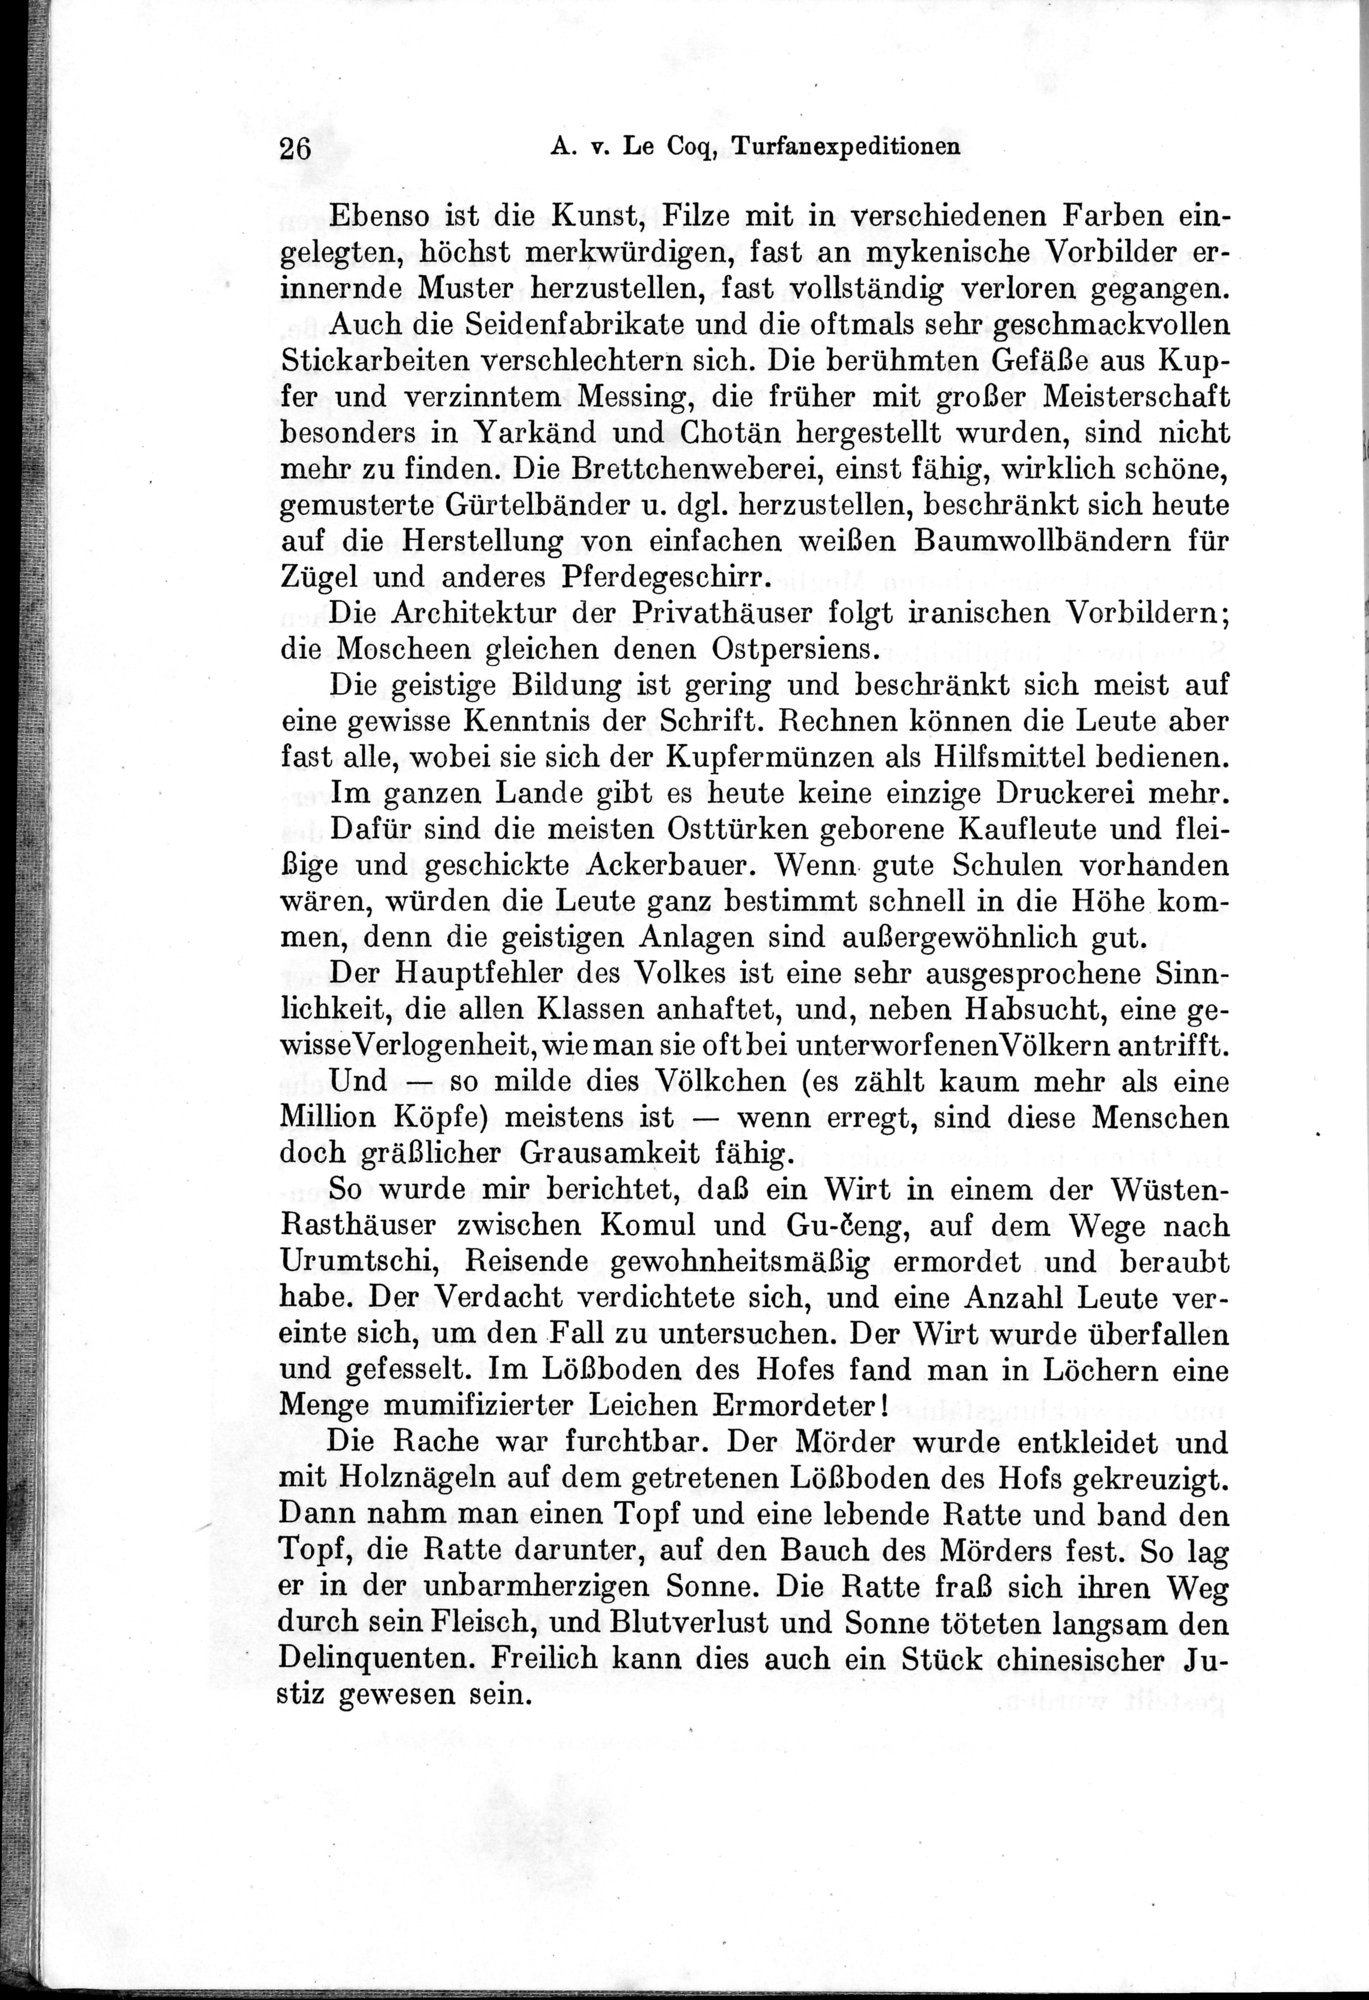 Auf Hellas Spuren in Ostturkistan : vol.1 / Page 46 (Grayscale High Resolution Image)